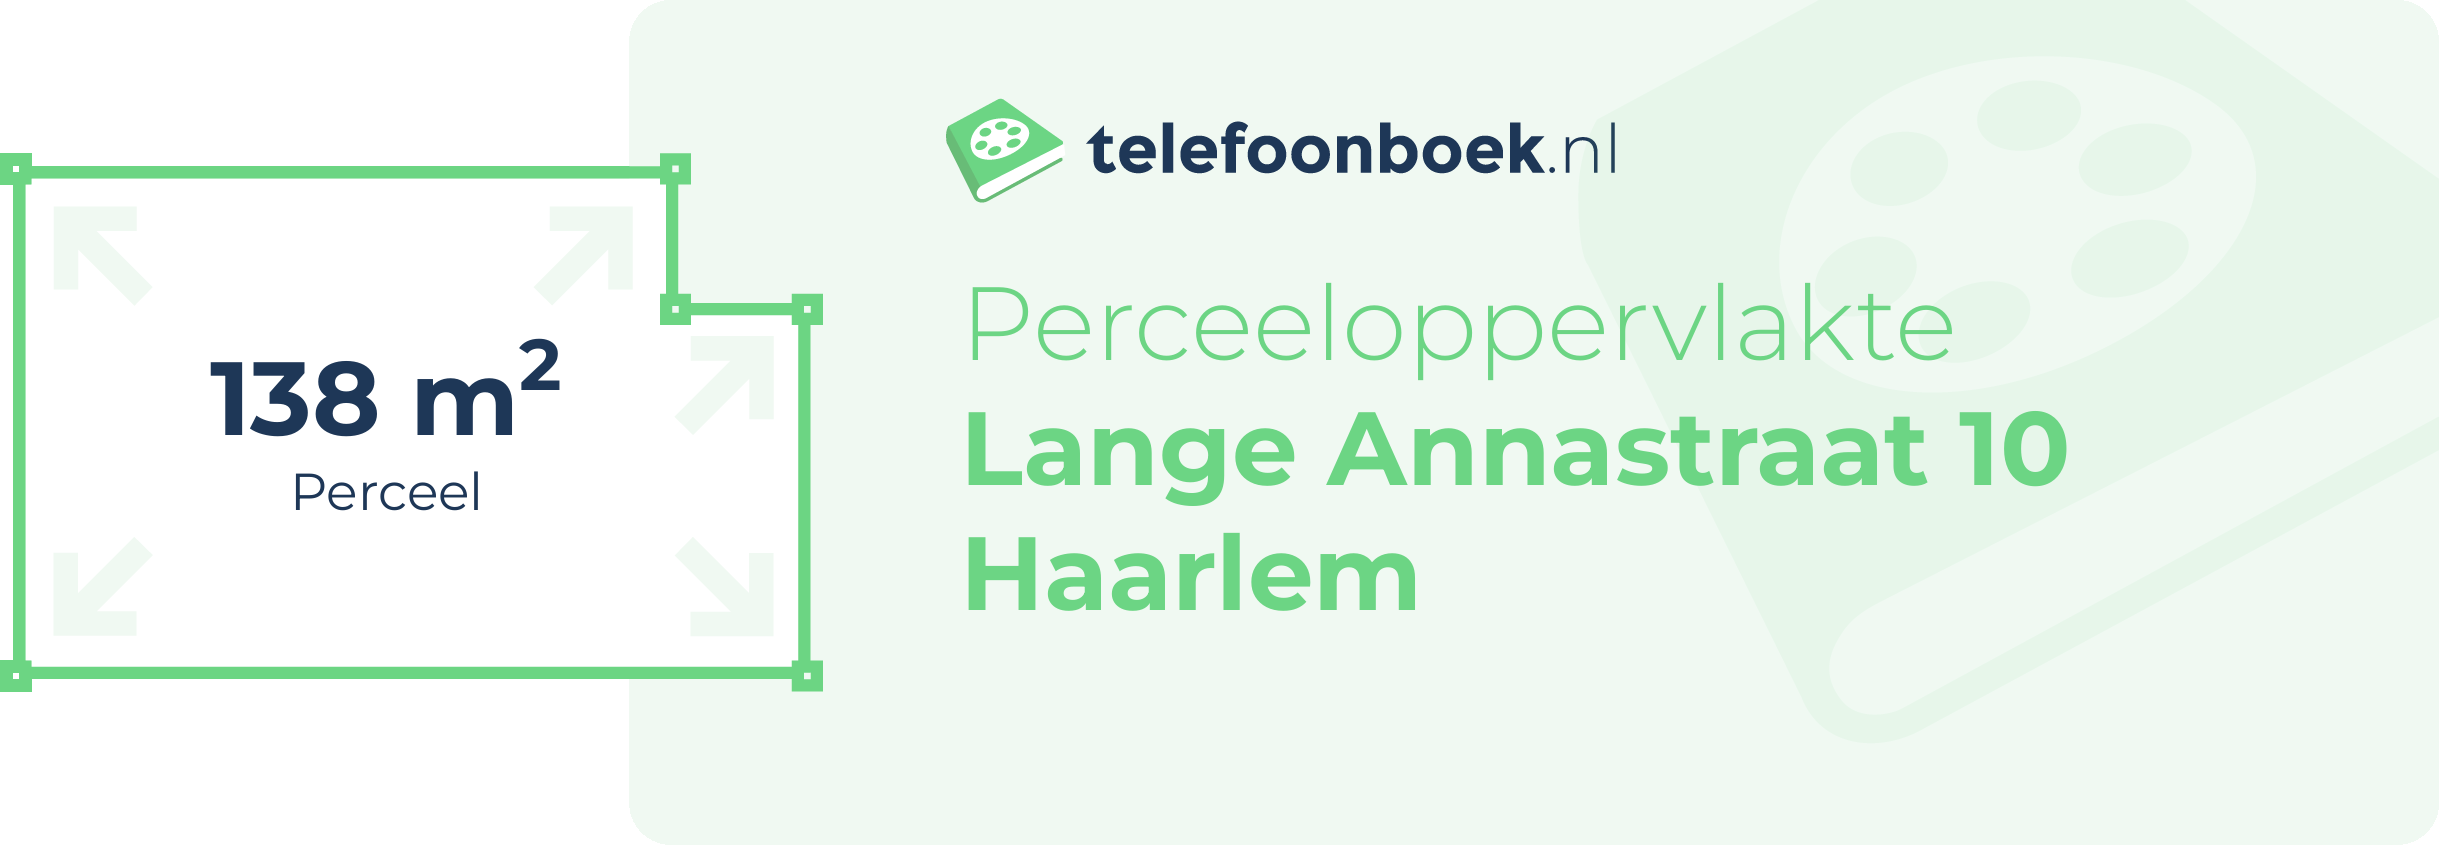 Perceeloppervlakte Lange Annastraat 10 Haarlem